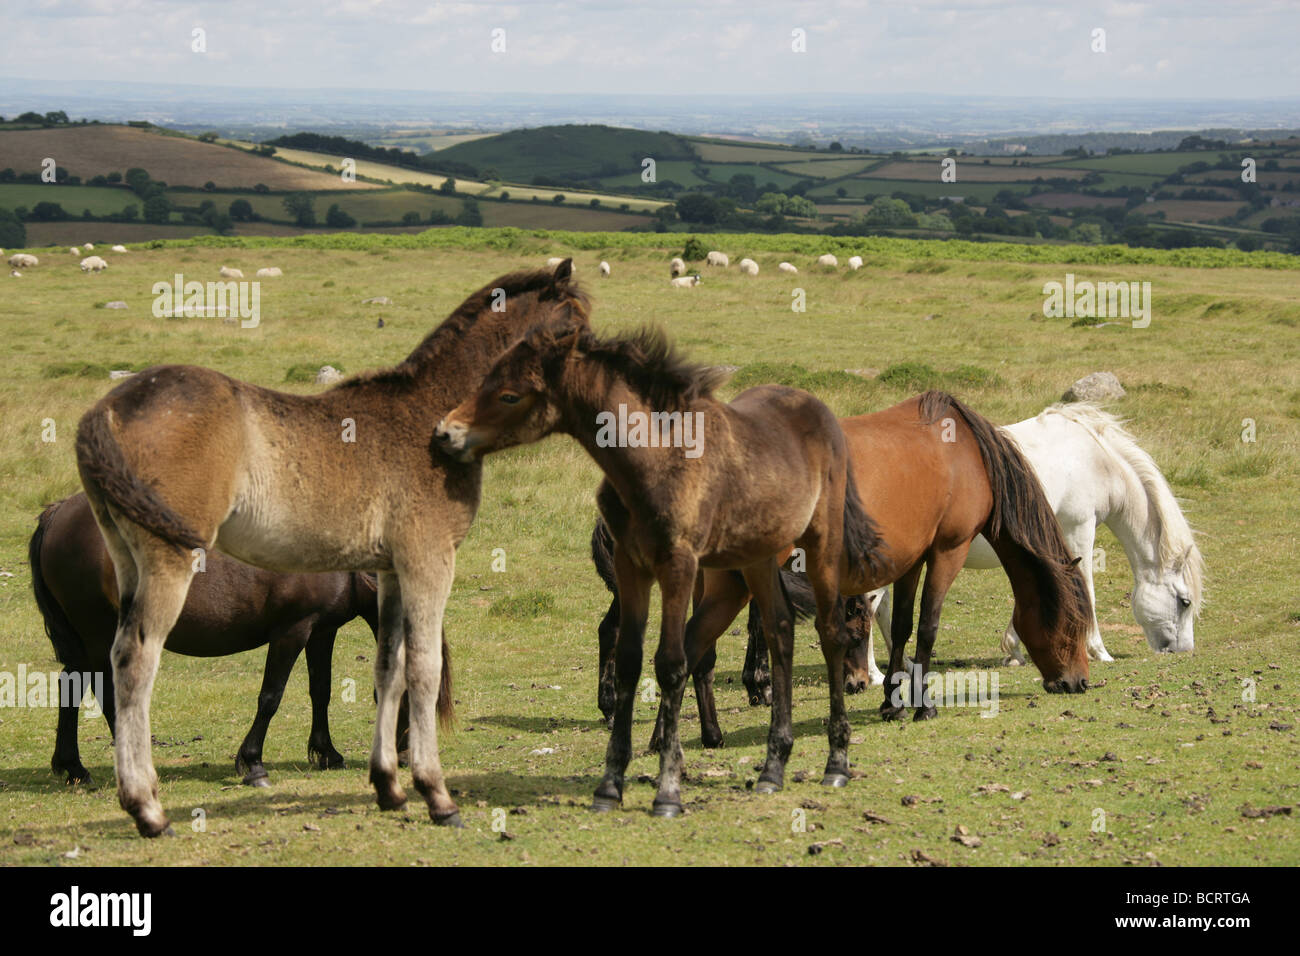 Area of Dartmoor, England. Feral Dartmoor ponies grazing with Dartmoor National Park in the background. Stock Photo